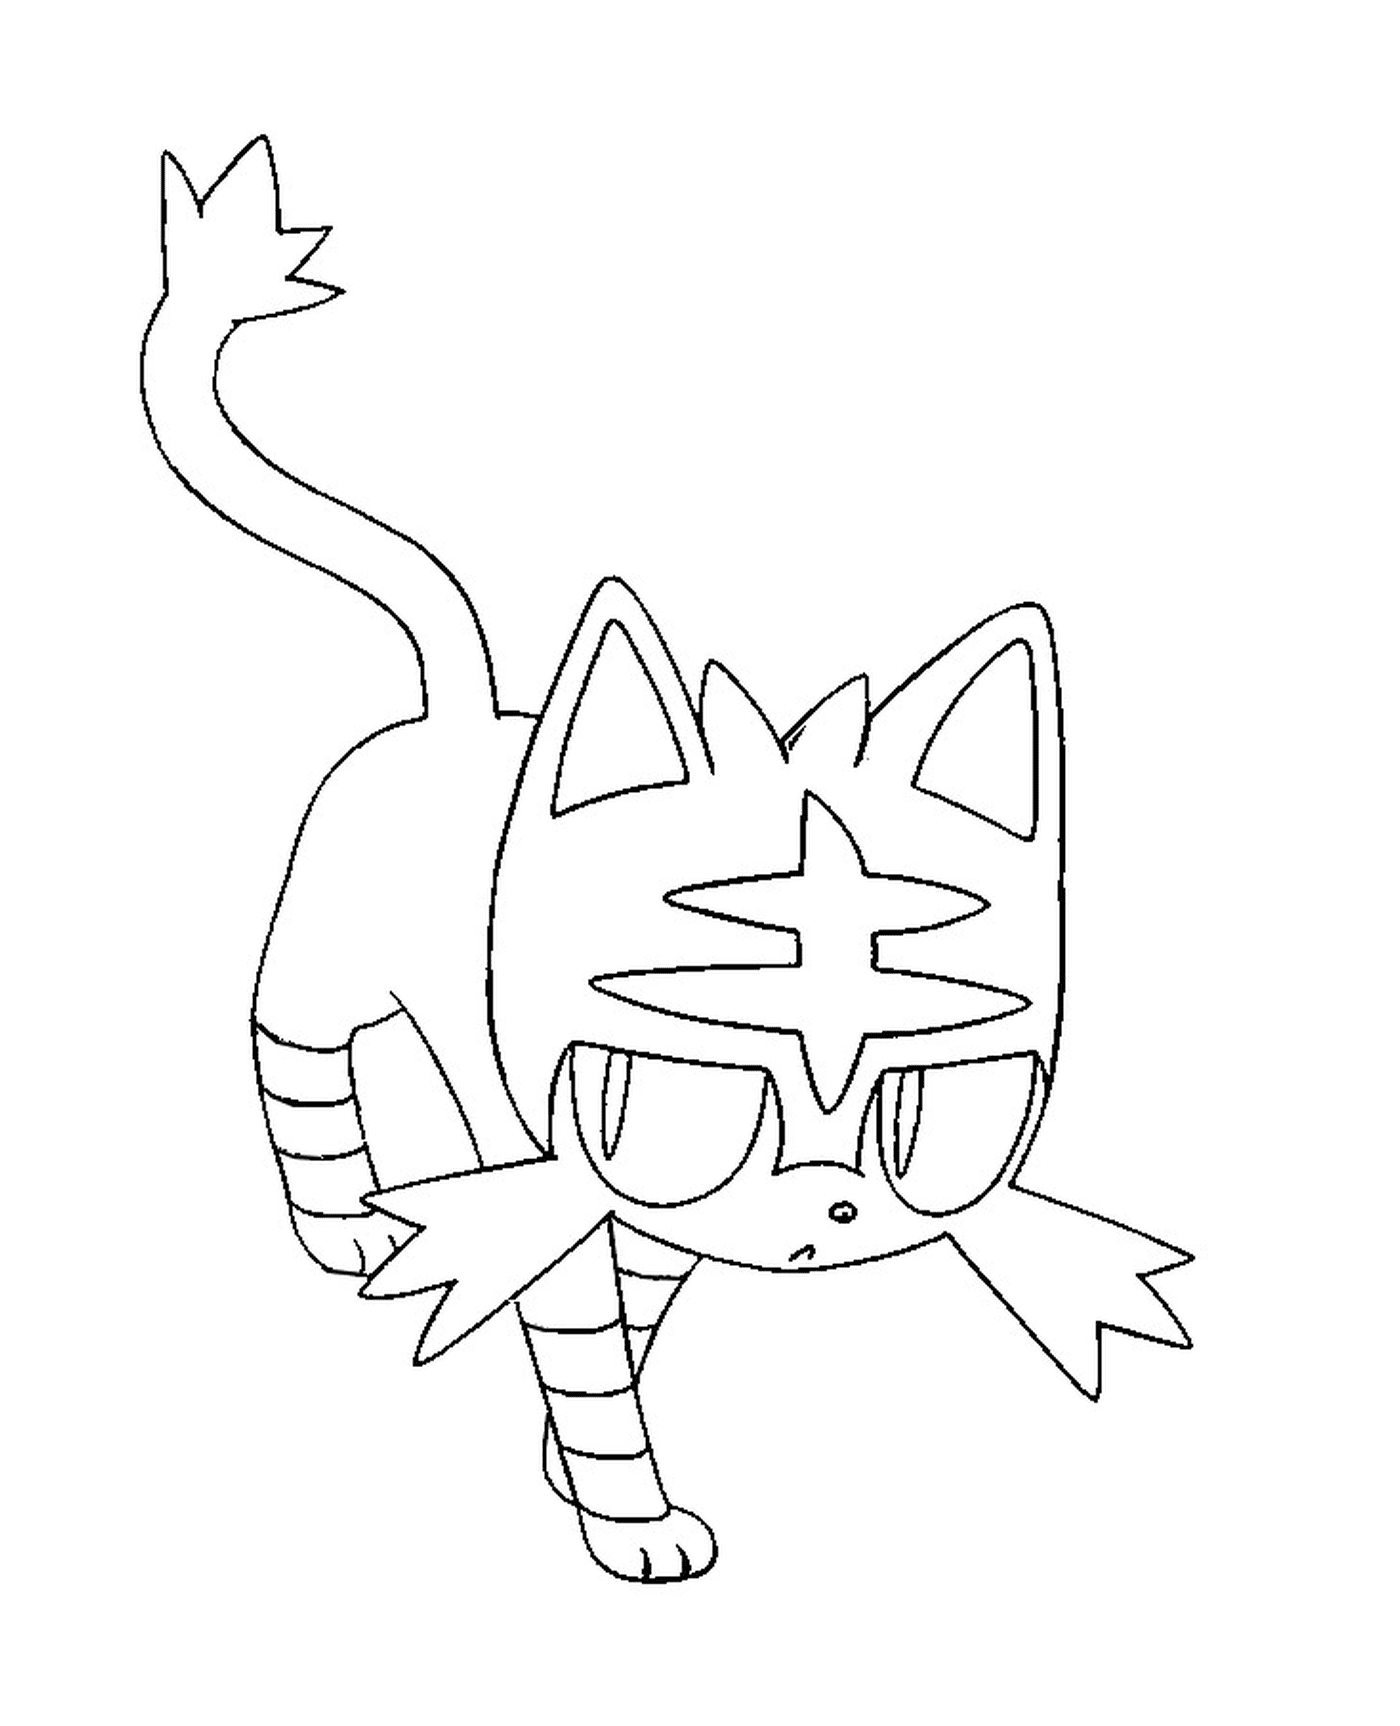  Flamiaou, a drawing cat 